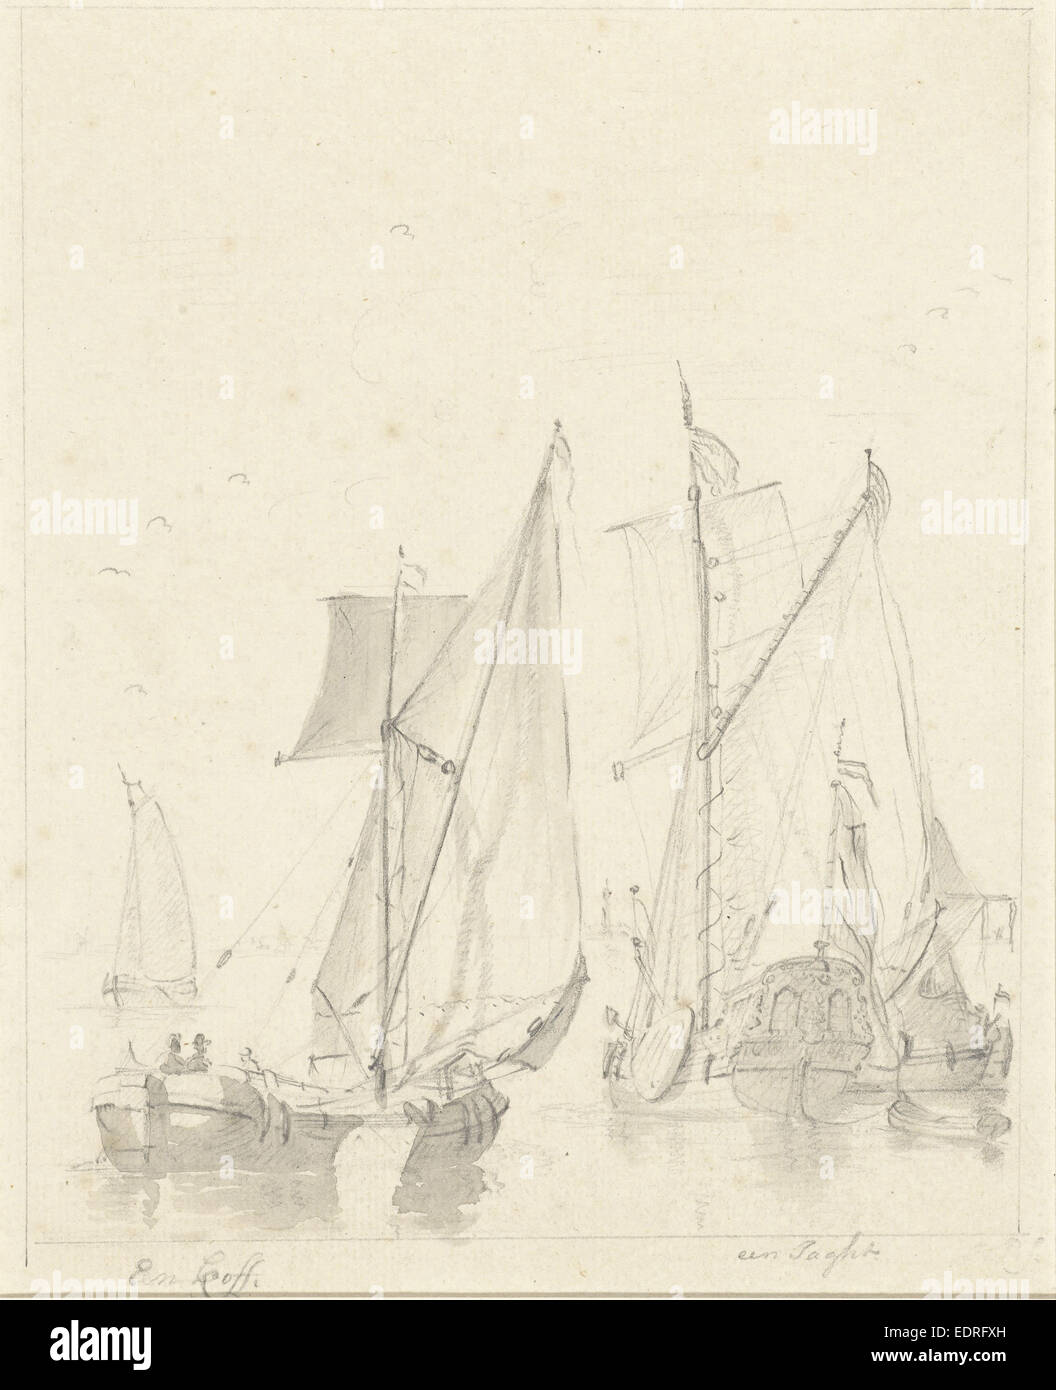 Dos representaciones de barcos, Anónimo, 1700 - 1800 Foto de stock